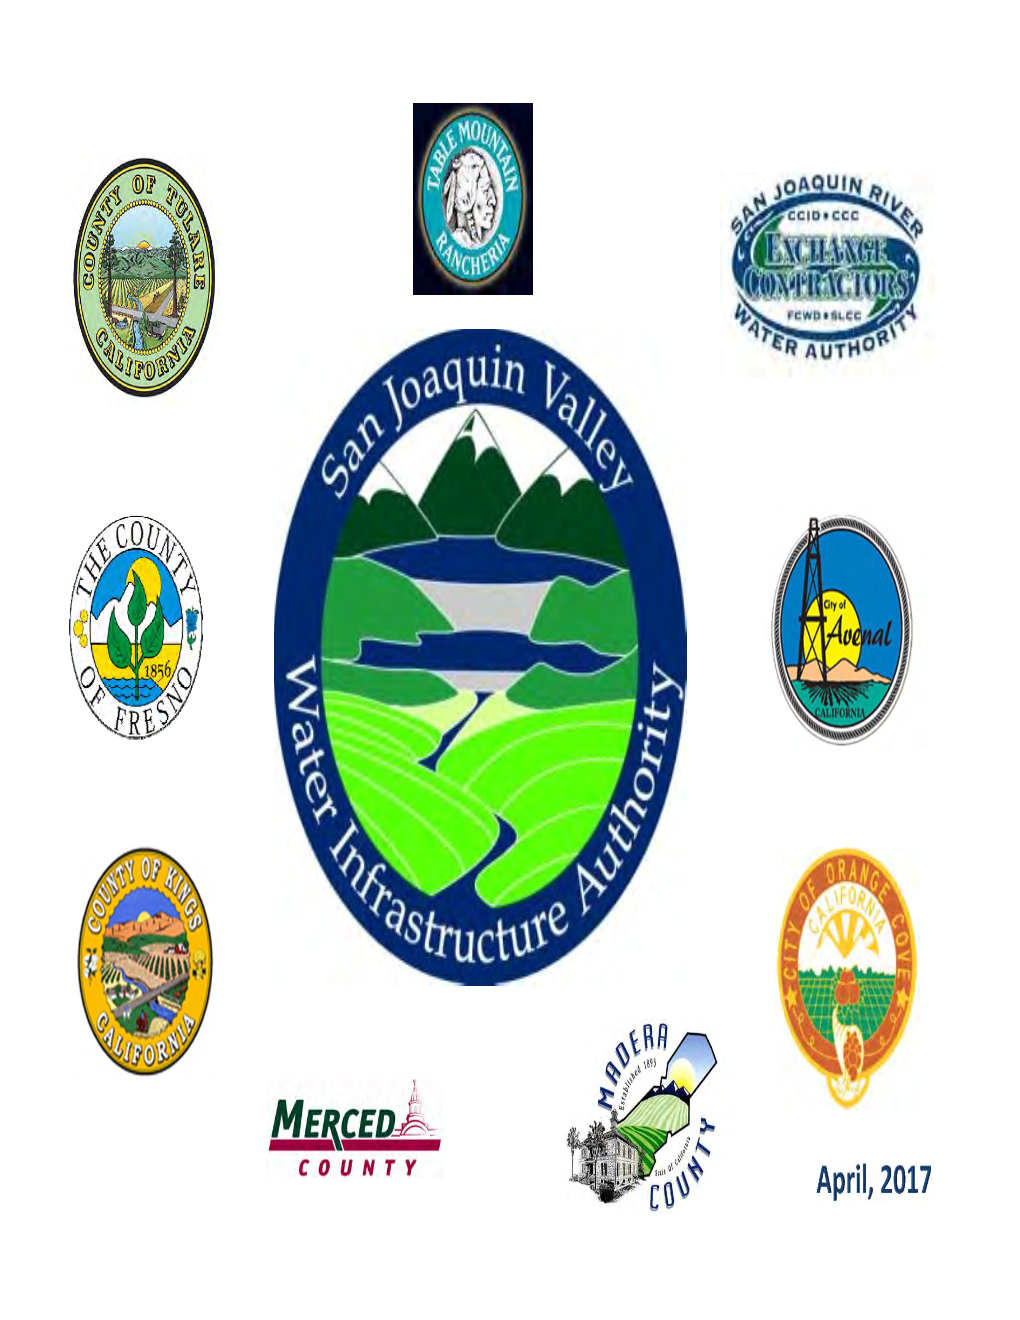 San Joaquin Valley Water Infrastructure Authority (Sjvwia))